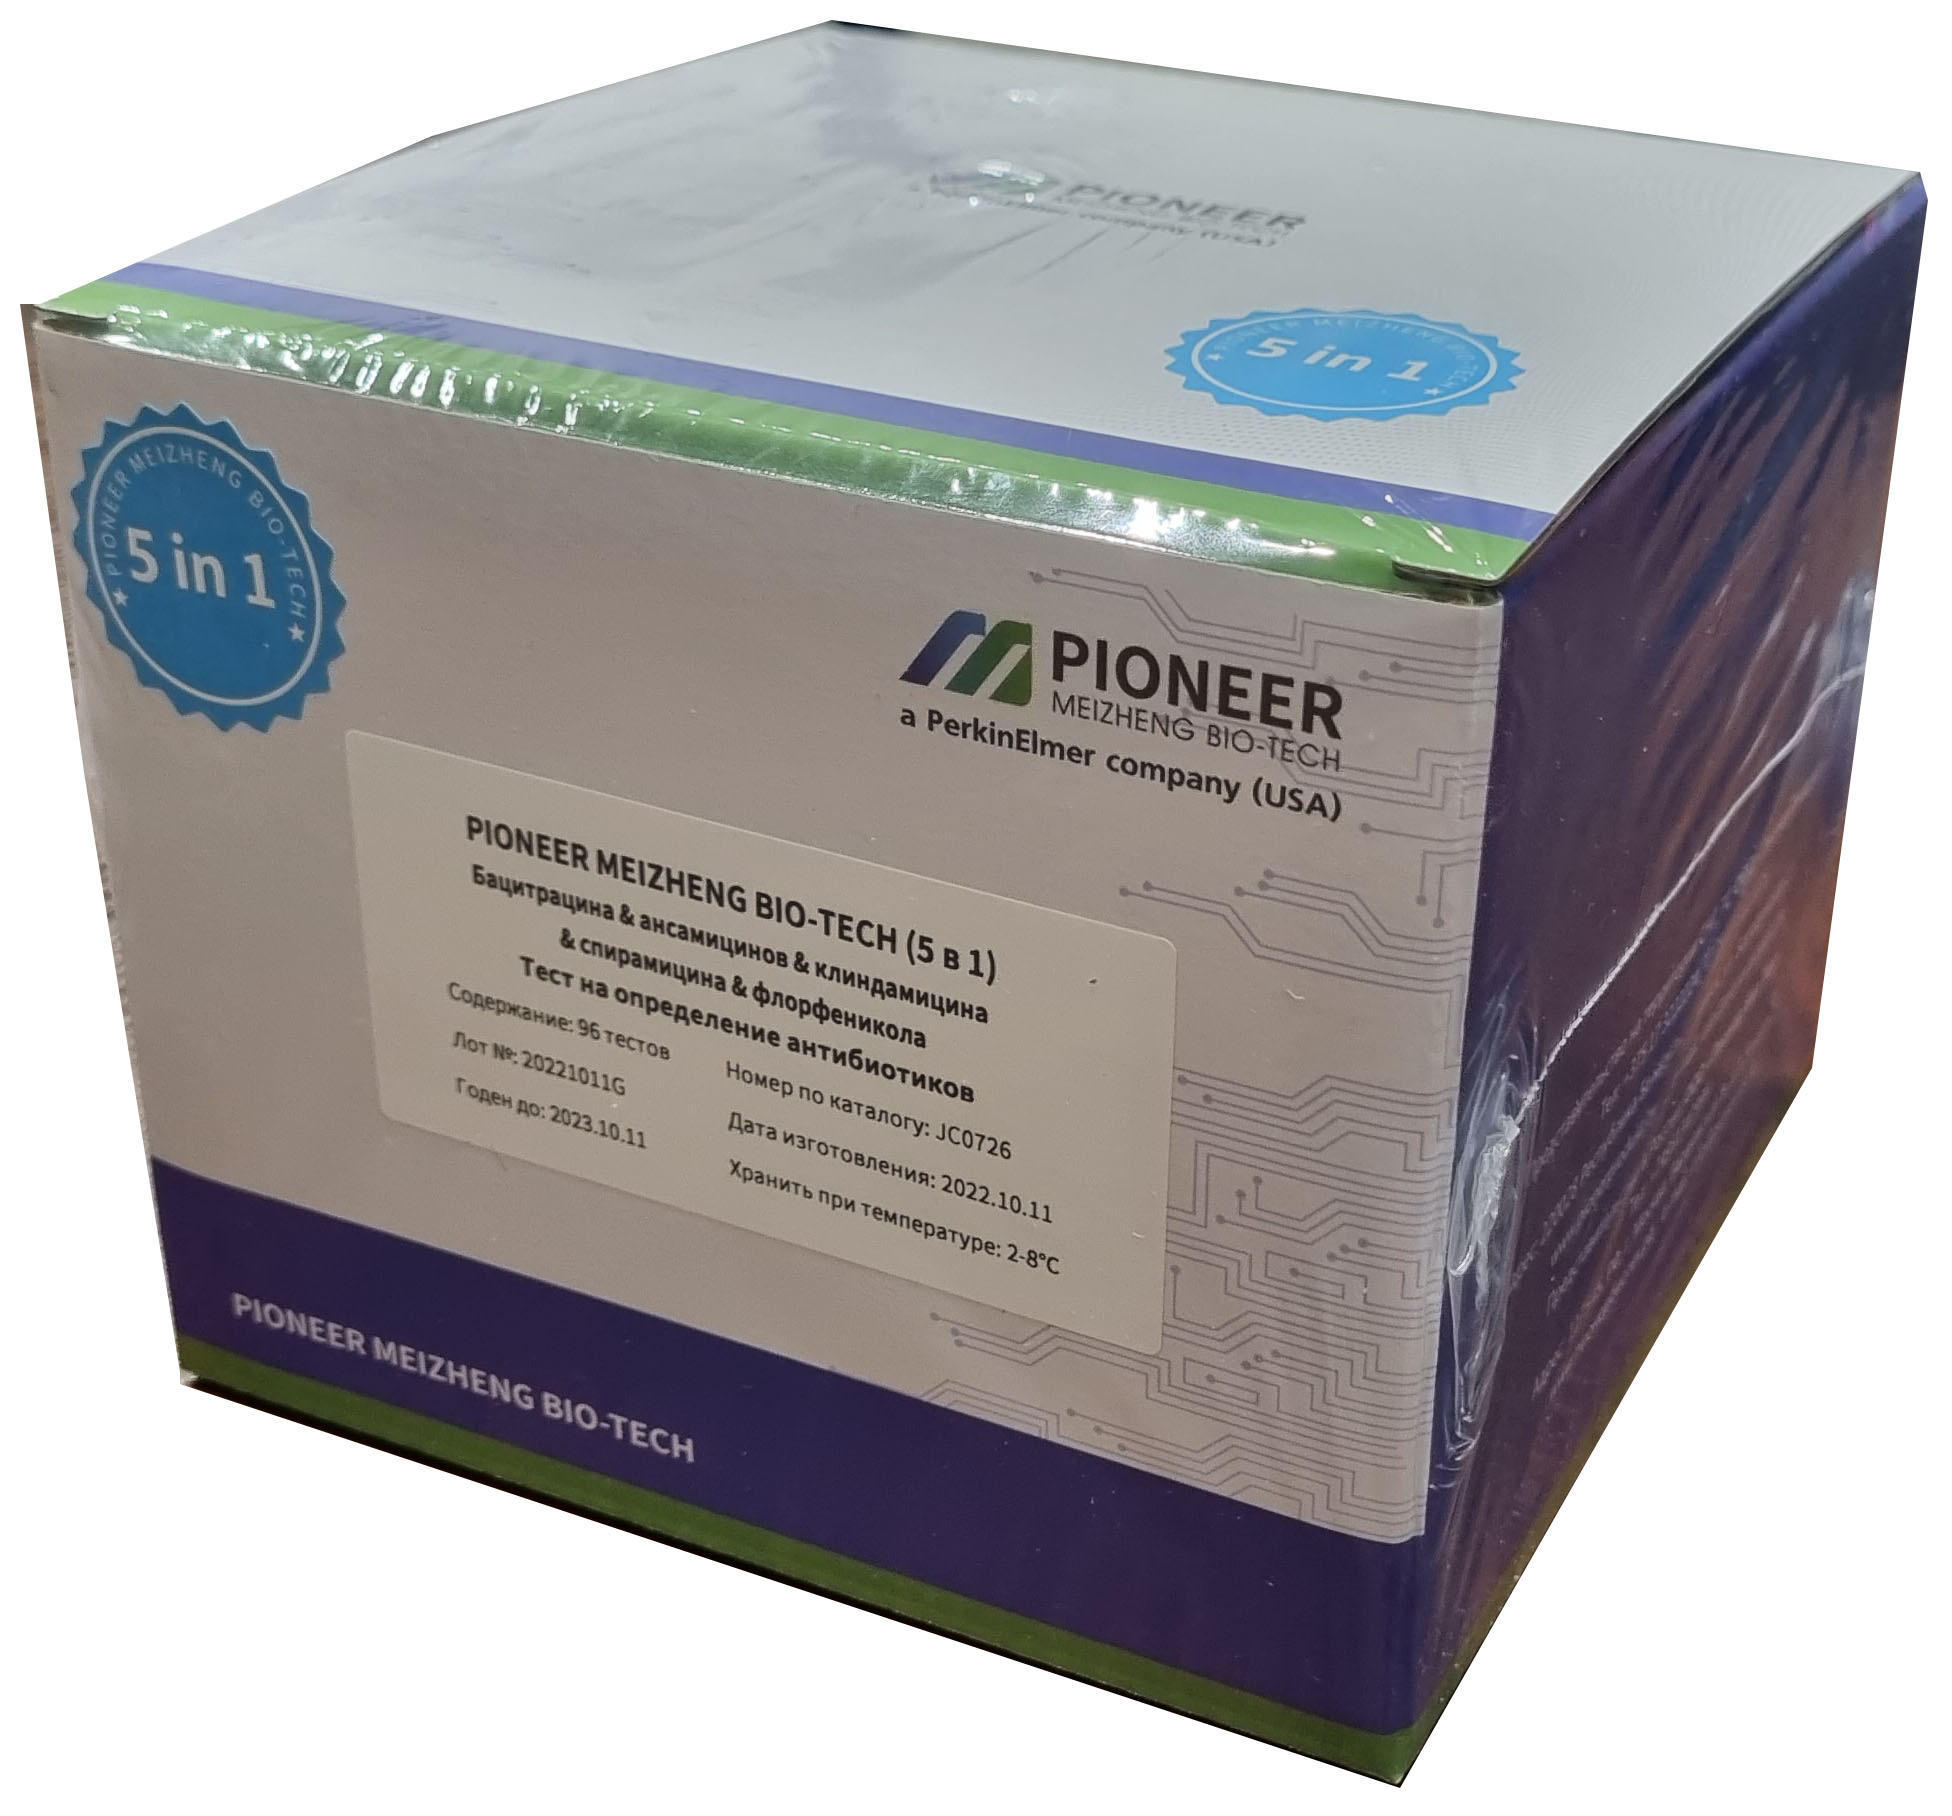 PIONEER MEIZHENG BIO-TECH (5 in 1) JC0726 /Экспресс-тесты для определения остаточного количества Бацитрацина, ансамицинов, клиндамицина, спирамицина, флорфеникола в молоке, молочной сыворотке